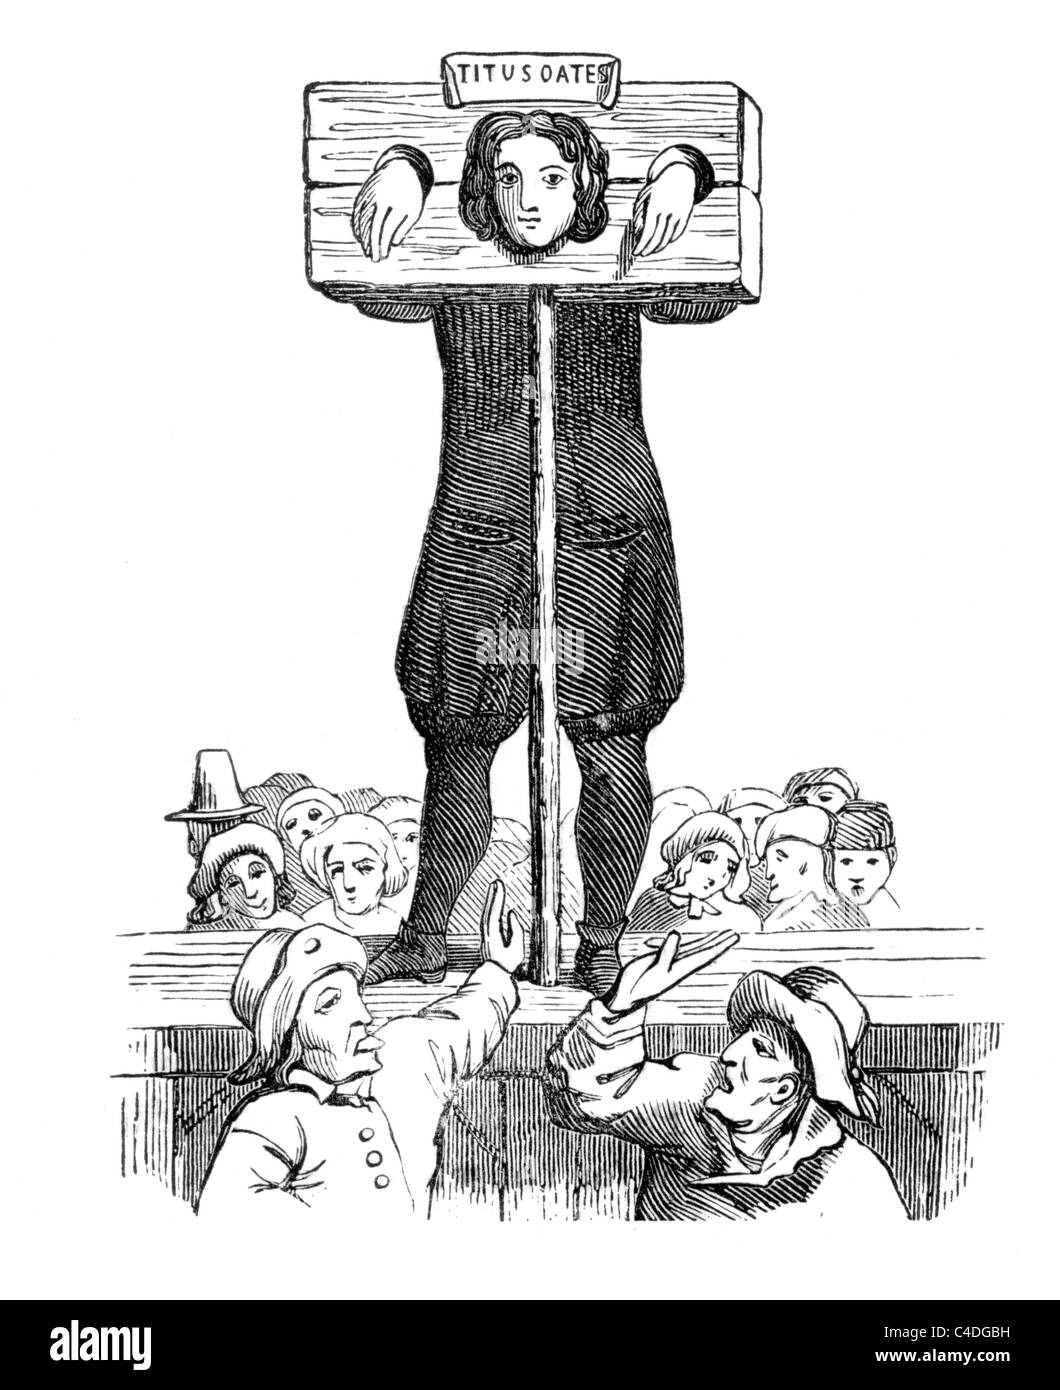 Titus Oates en la picota; ilustración en blanco y negro. Foto de stock